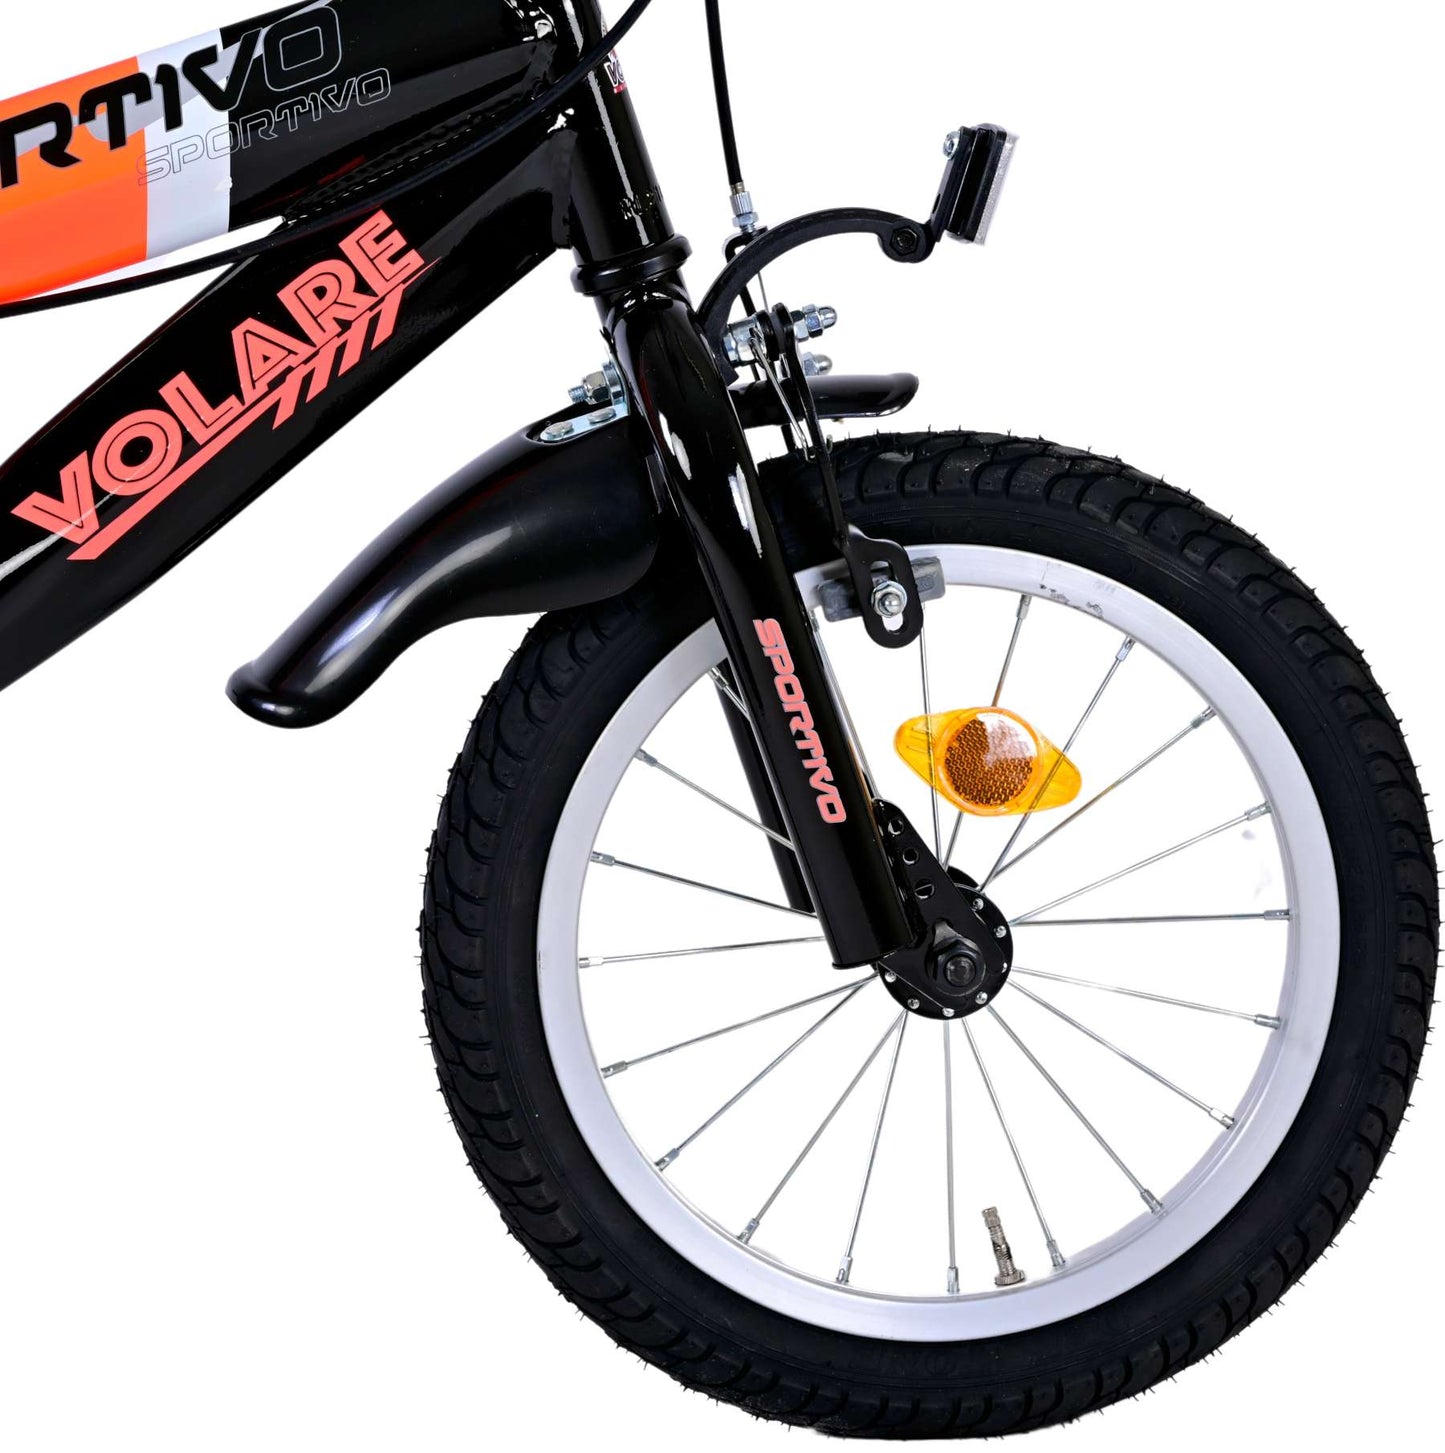 Bicycle per bambini Vlatare SportVo - Boys - 14 pollici - Neon Oranje Black - Freni a due mani